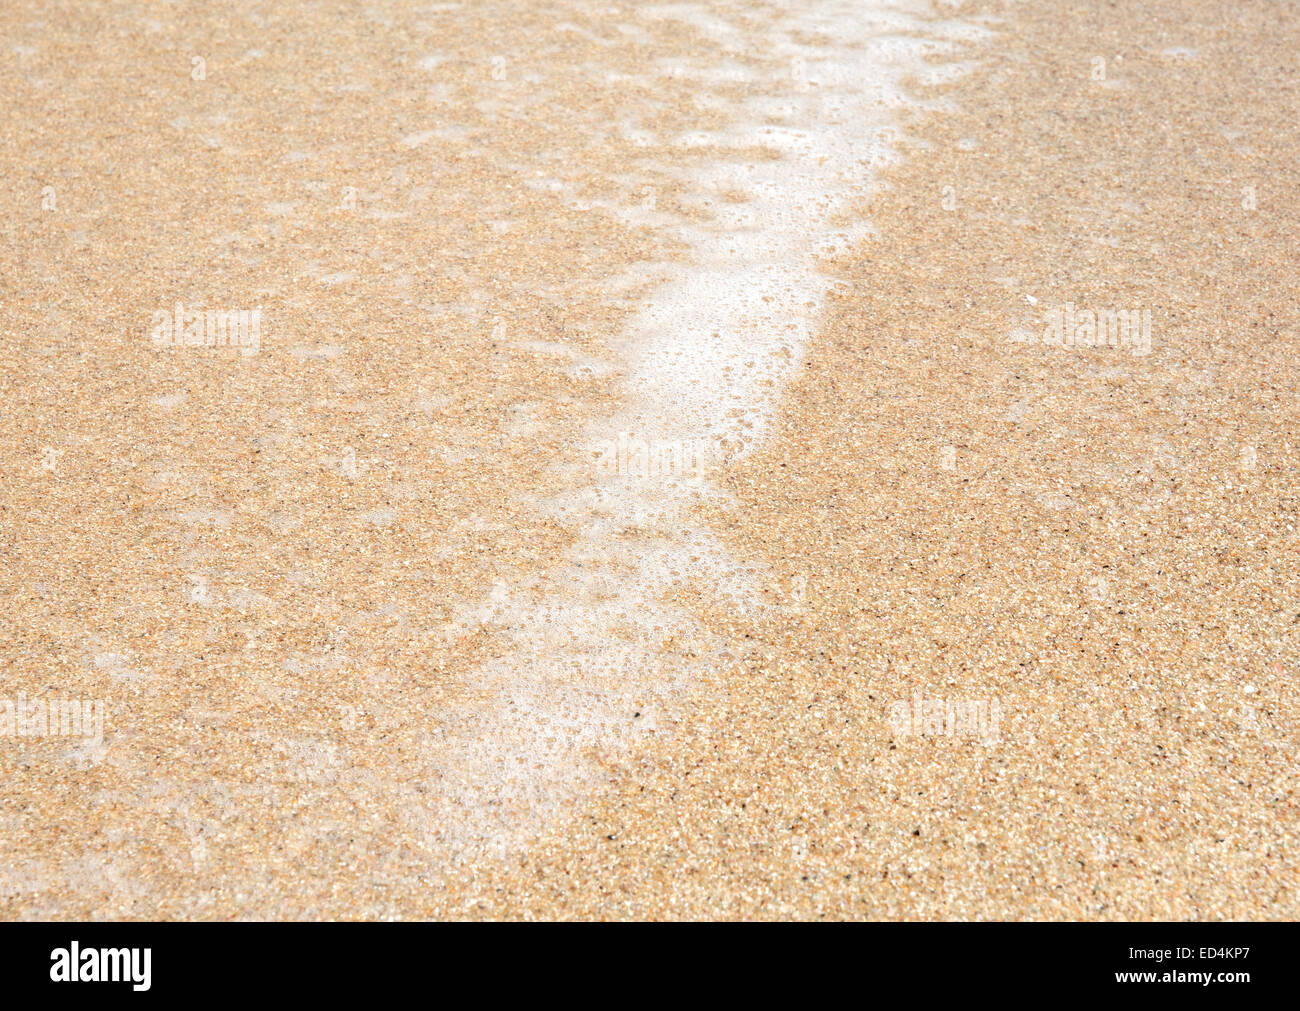 La sabbia e la macro di seafoam sulla spiaggia tropicale. Sud della provincia, Sri Lanka, in Asia. Foto Stock